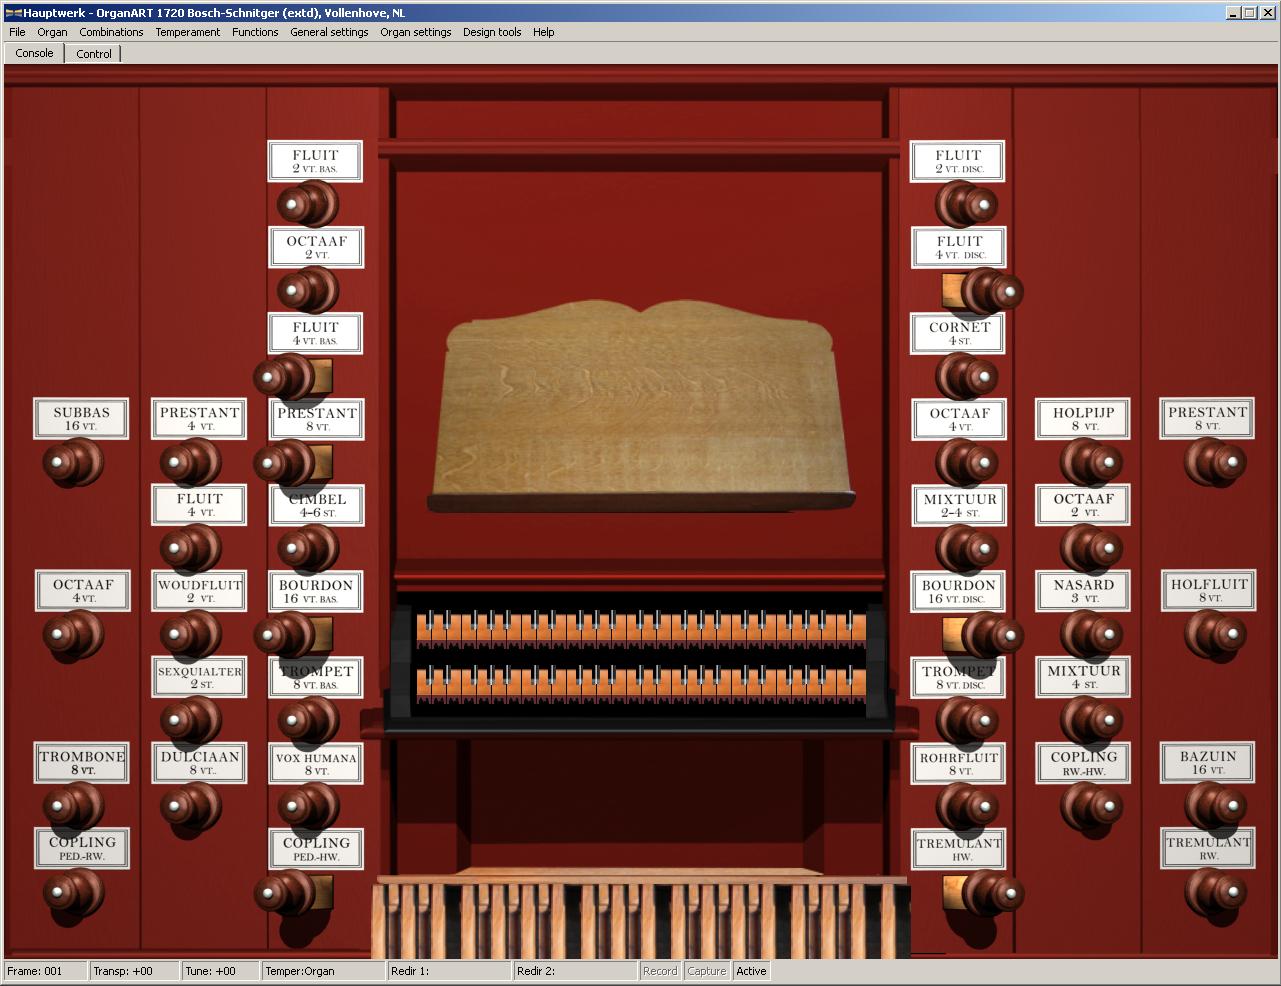 Scherm Vollenhove: 2 klavieren en pedaal een compleet orgel!